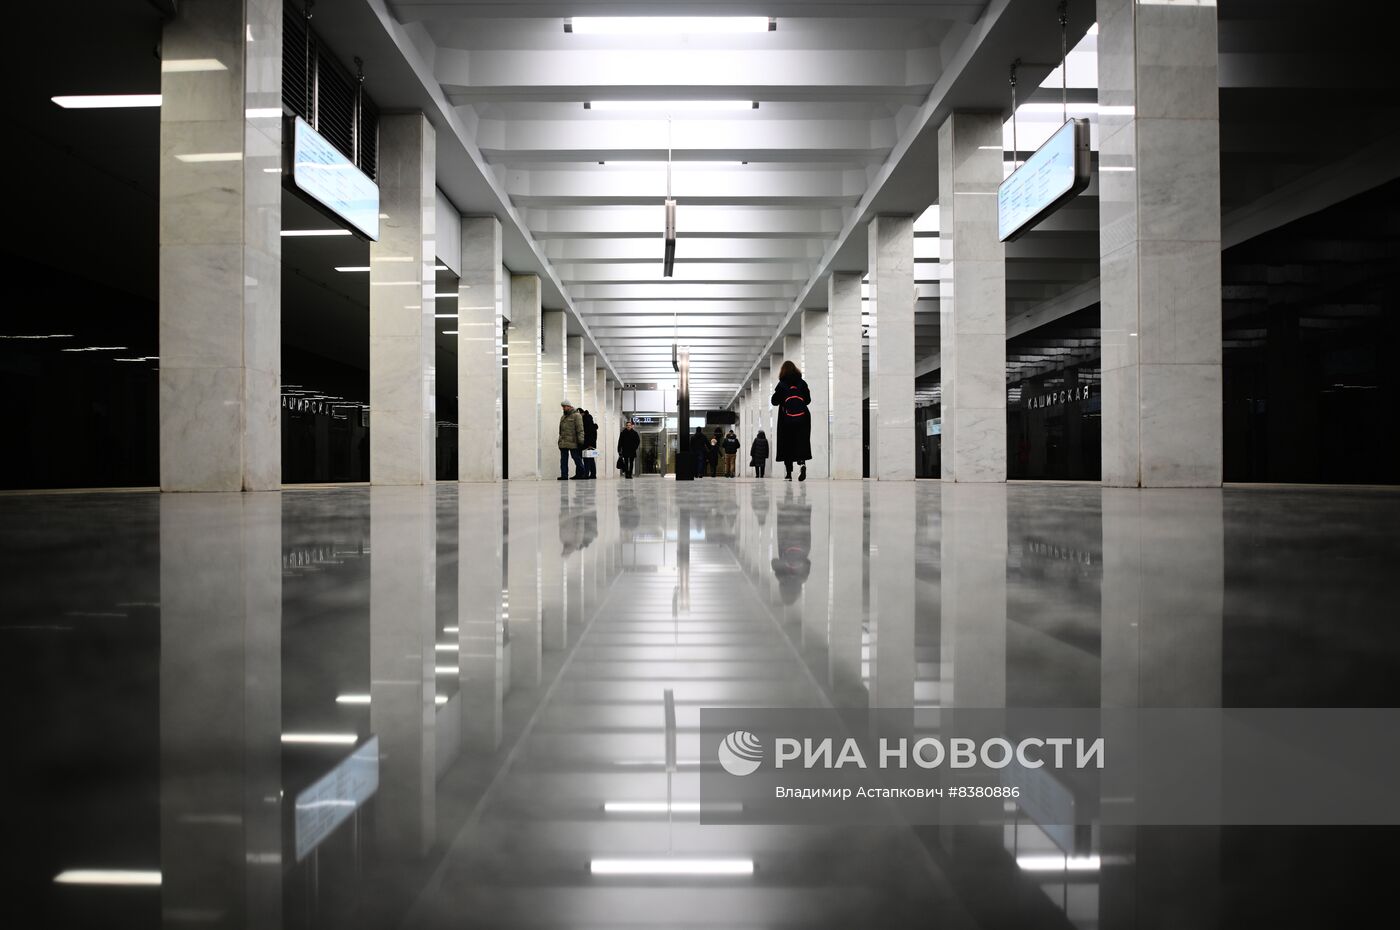 Открытие Большой кольцевой линии московского метро 